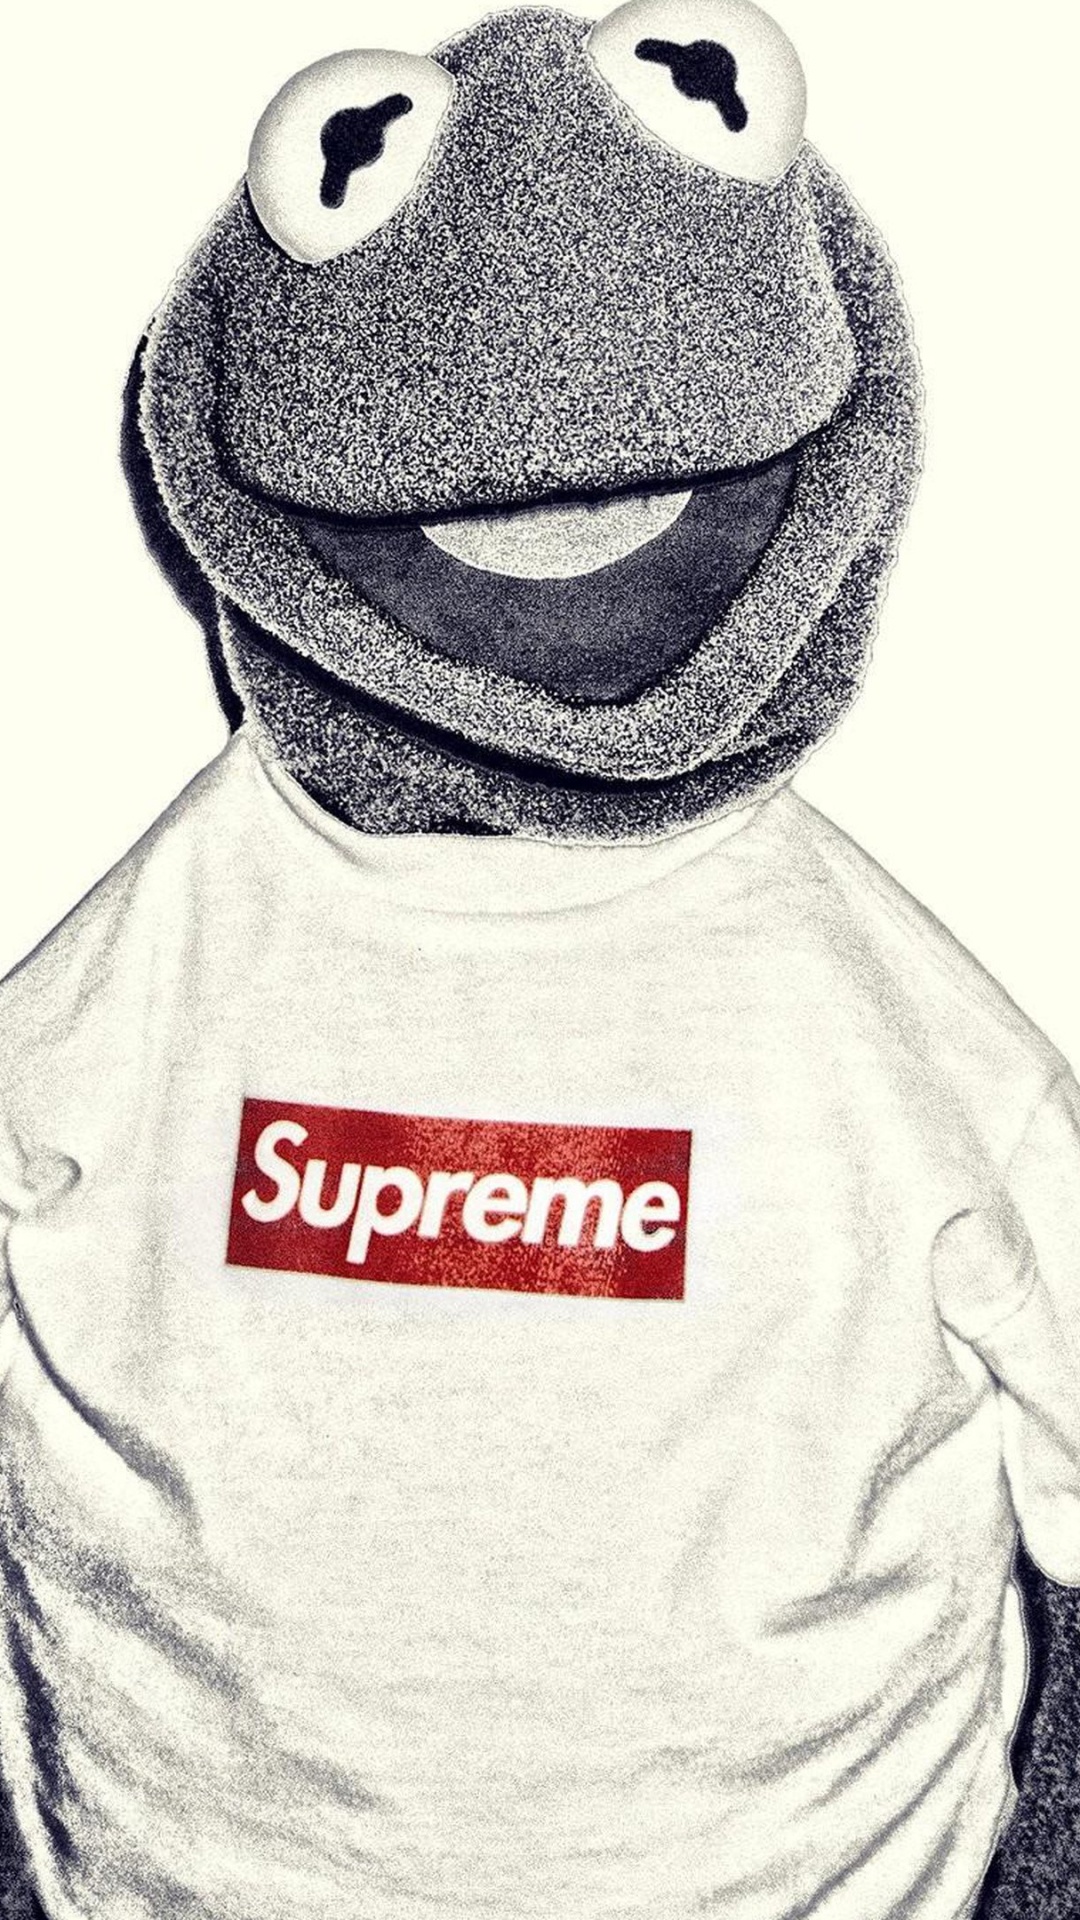 Kermit la Rana, Supremo, Prendas de Vestir Exteriores, Marca, Camiseta. Wallpaper in 1080x1920 Resolution